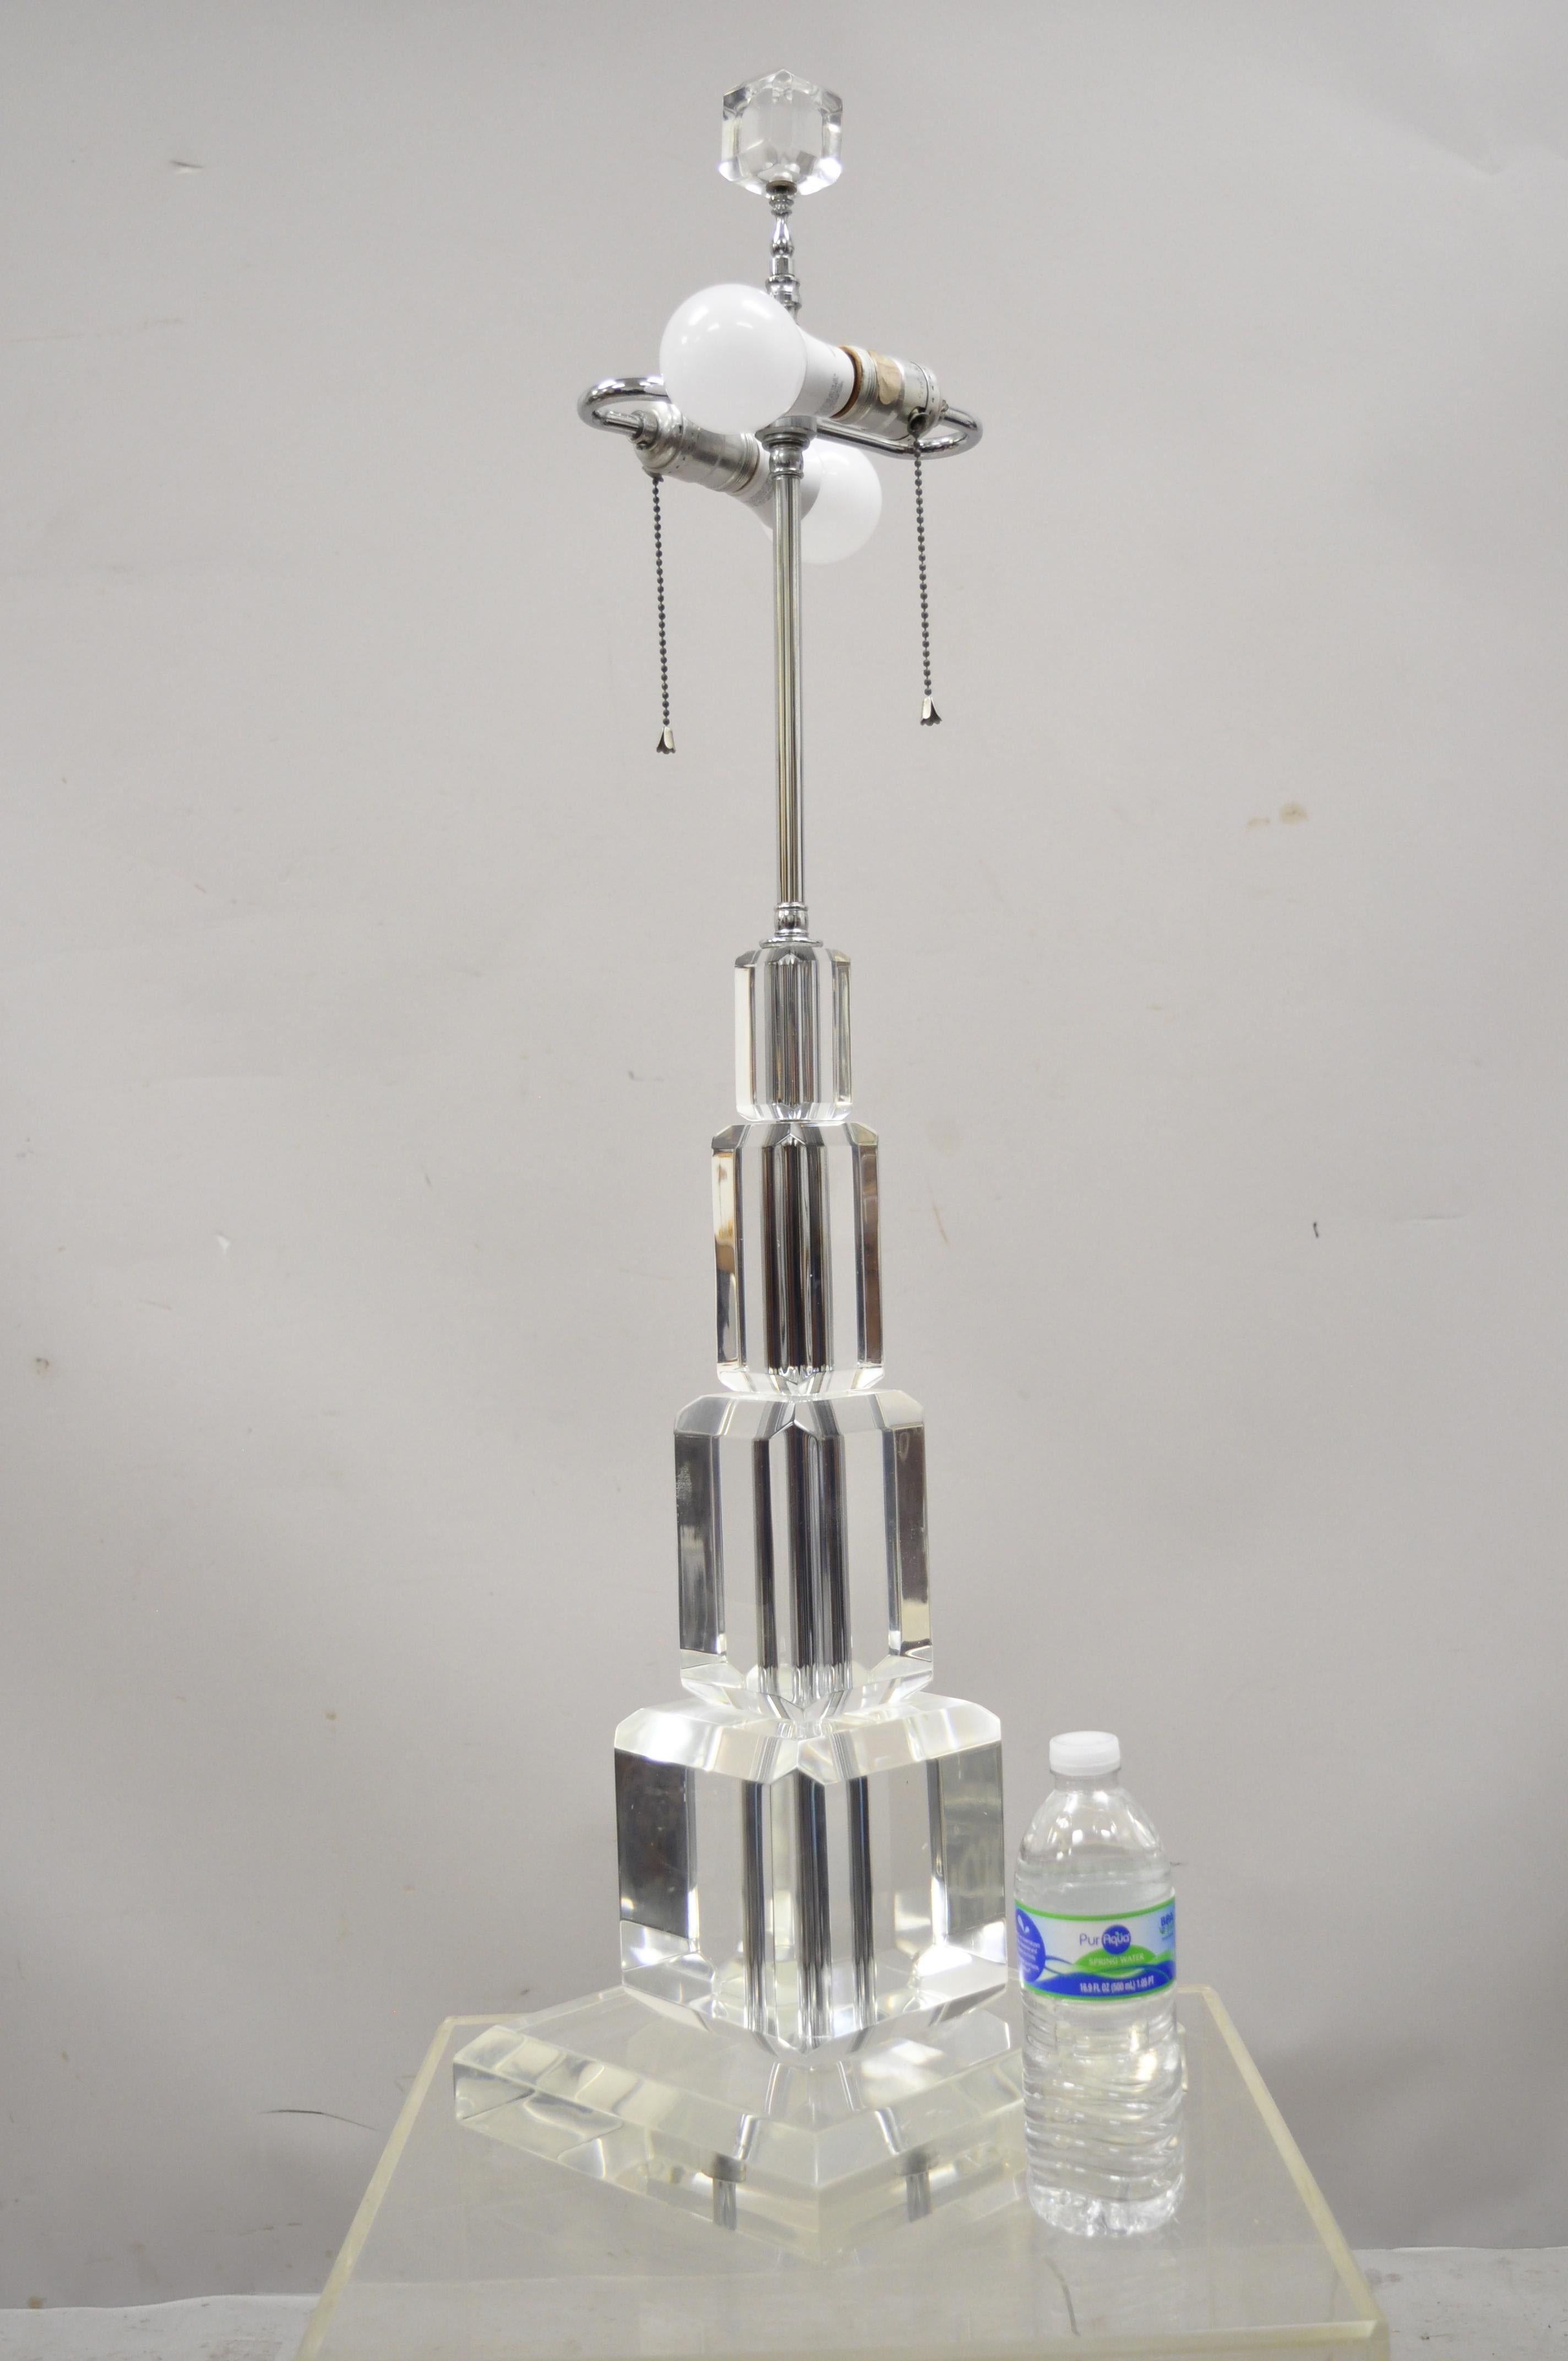 Art-Vue Inc. Lampe de table gratte-ciel empilée en acrylique Lucite de style moderne du milieu du siècle. L'objet présente une taille impressionnante, des montures chromées, un Label d'origine, un très bel objet vintage, un style et une forme